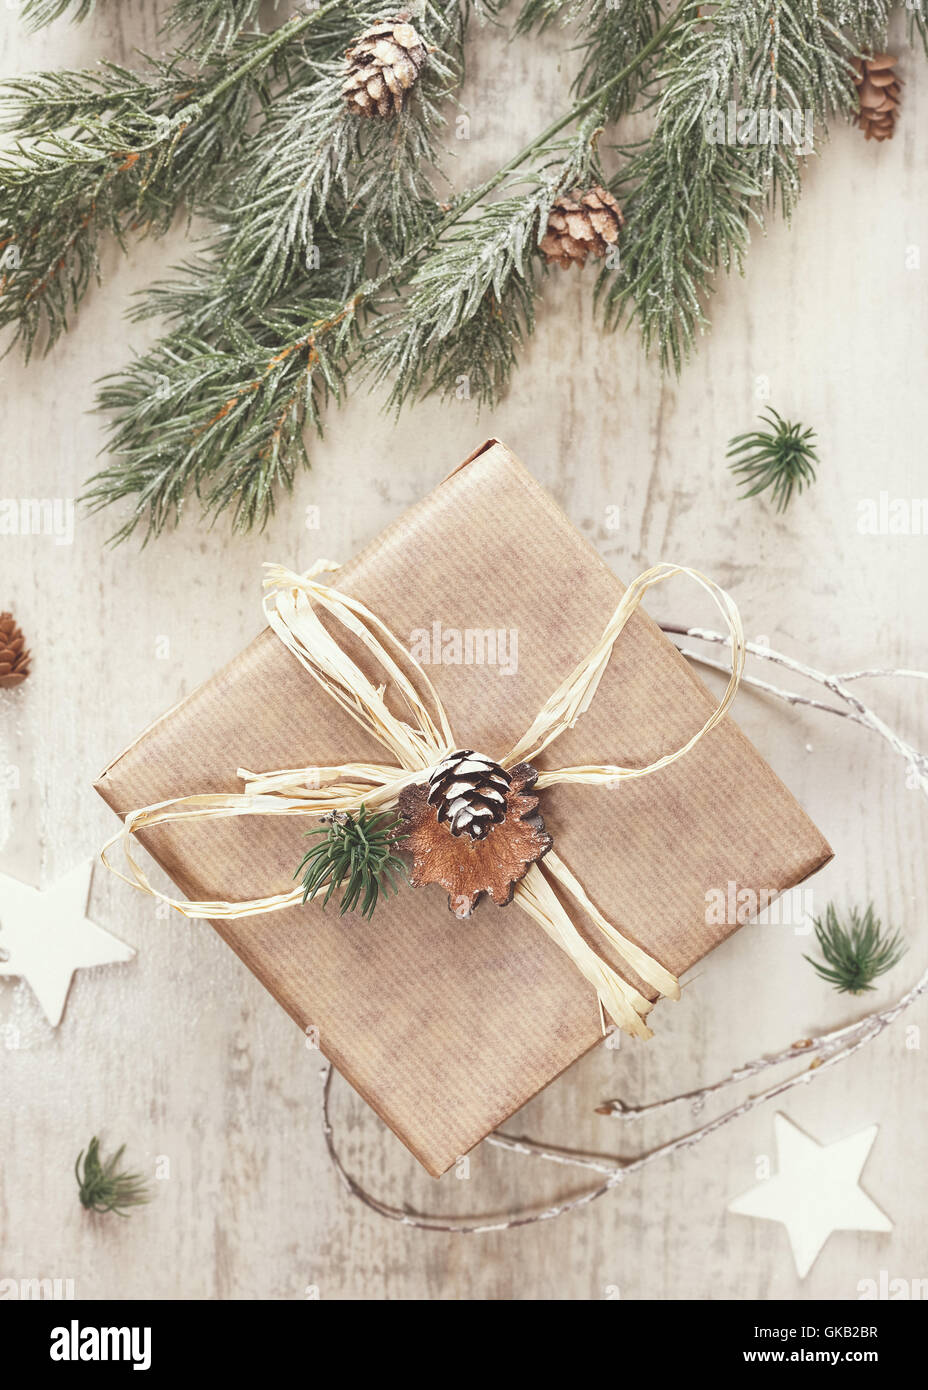 Weihnachts-Geschenk in Packpapier eingewickelt. Vintage getönten Bild, Draufsicht, Leerzeichen Stockfoto